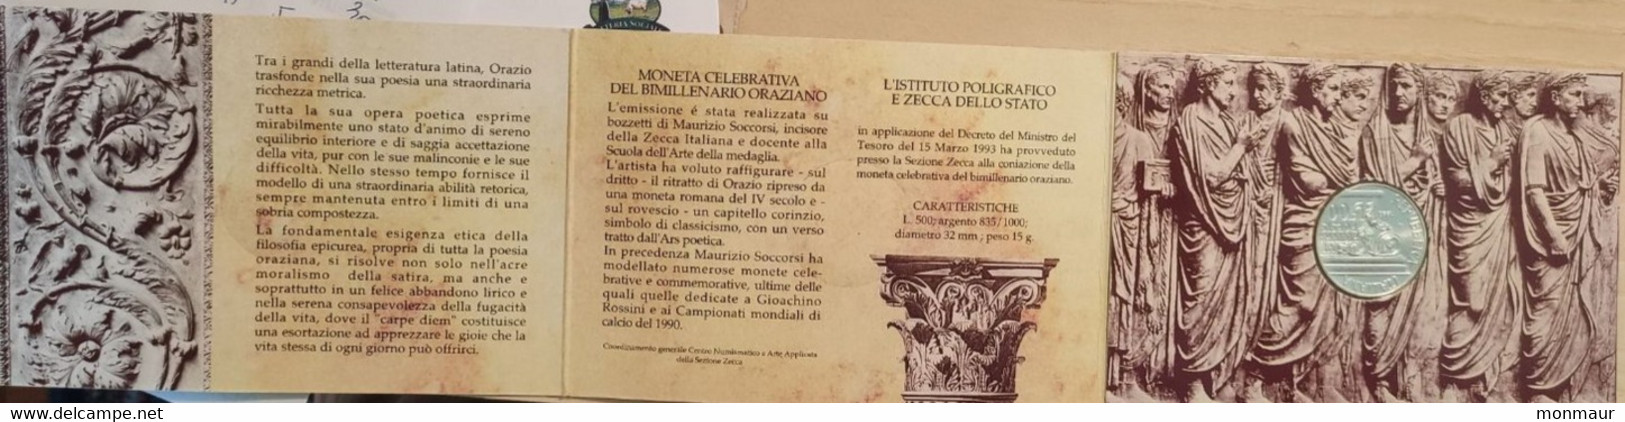 ITALIA 1993 BIMILLENARIO ORAZIANO LIRE 500 - Commemorative